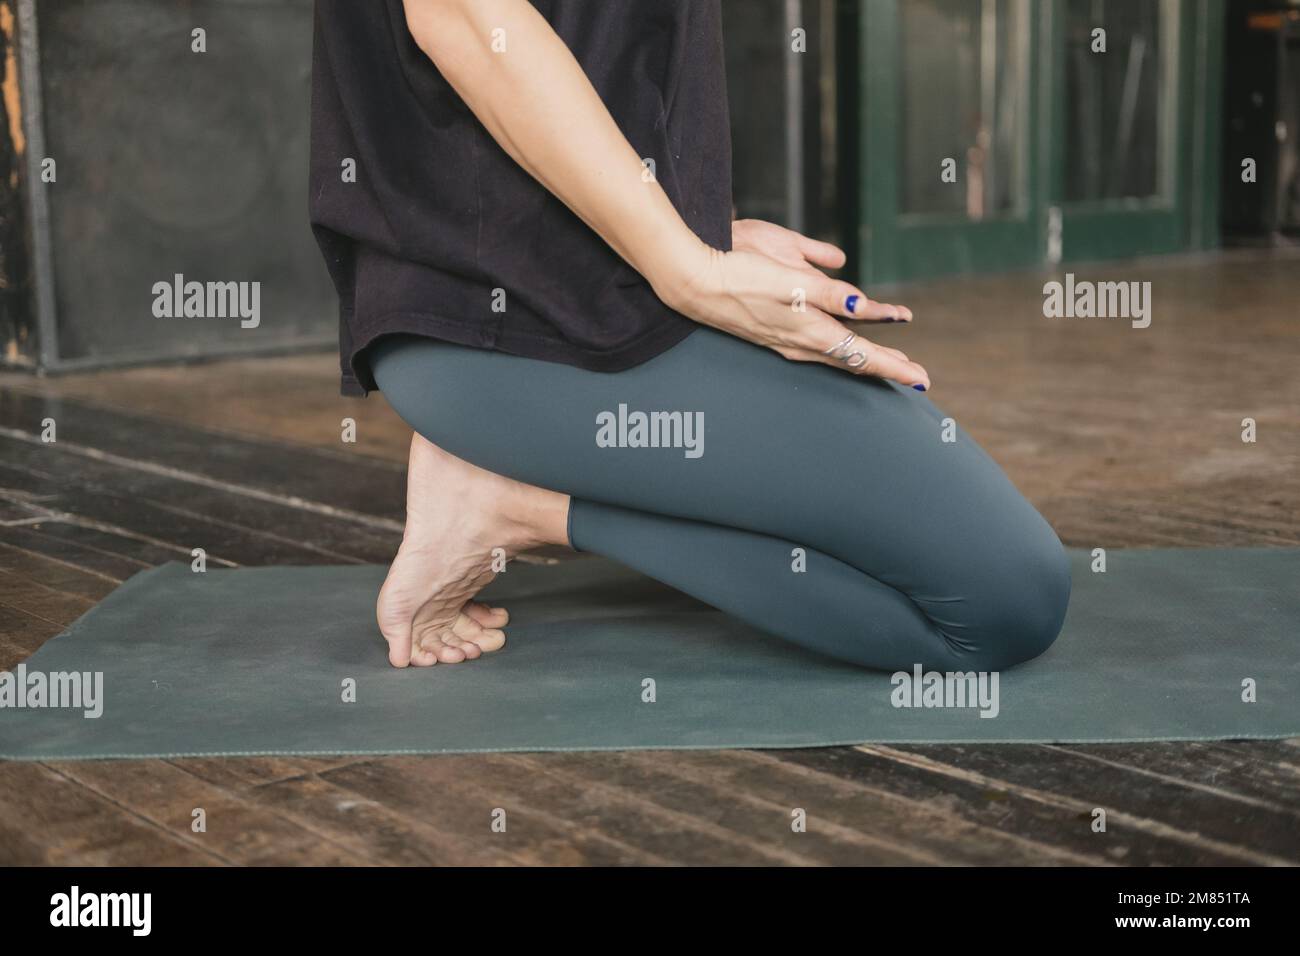 Femme non reconnaissable yogi nouveau professeur faisant une posture agenouillée avec les orteils repliés mains reposant sur les jambes avec les paumes vers le haut, entraînement de yoga, pieds nus Banque D'Images